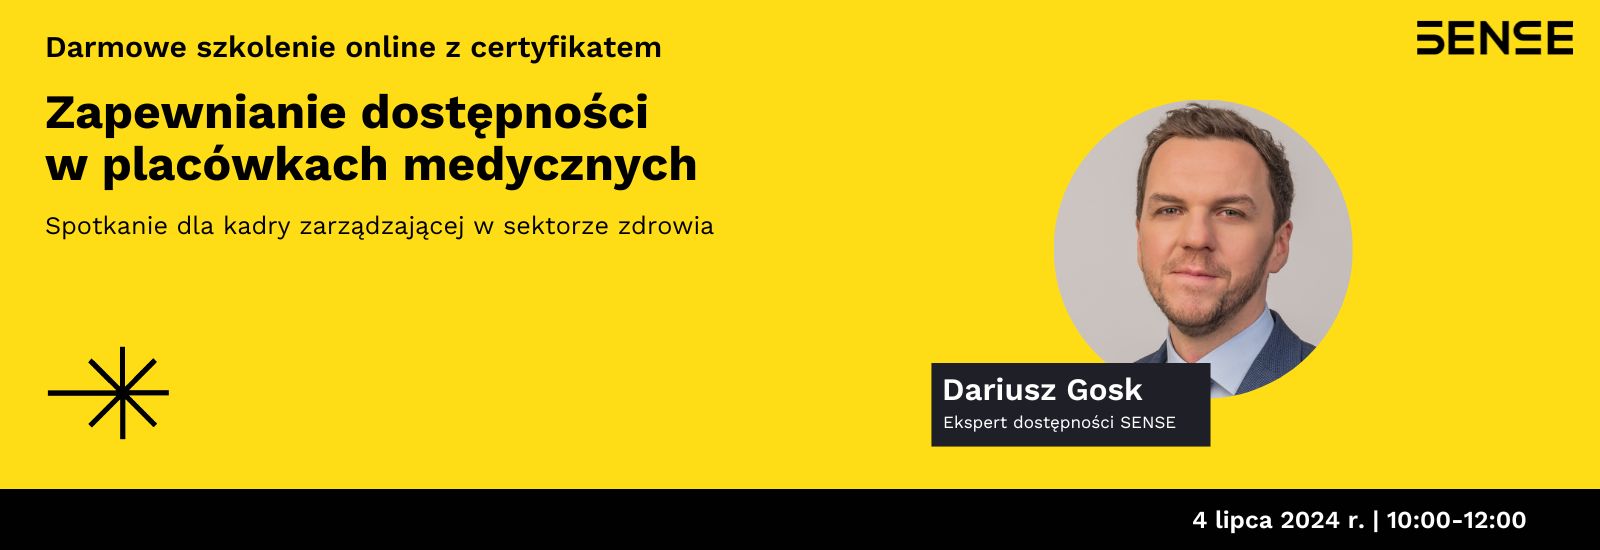 Dariusz Gosk szkolenie online - dostępność placówek medycznych 4 lipca godz. 10